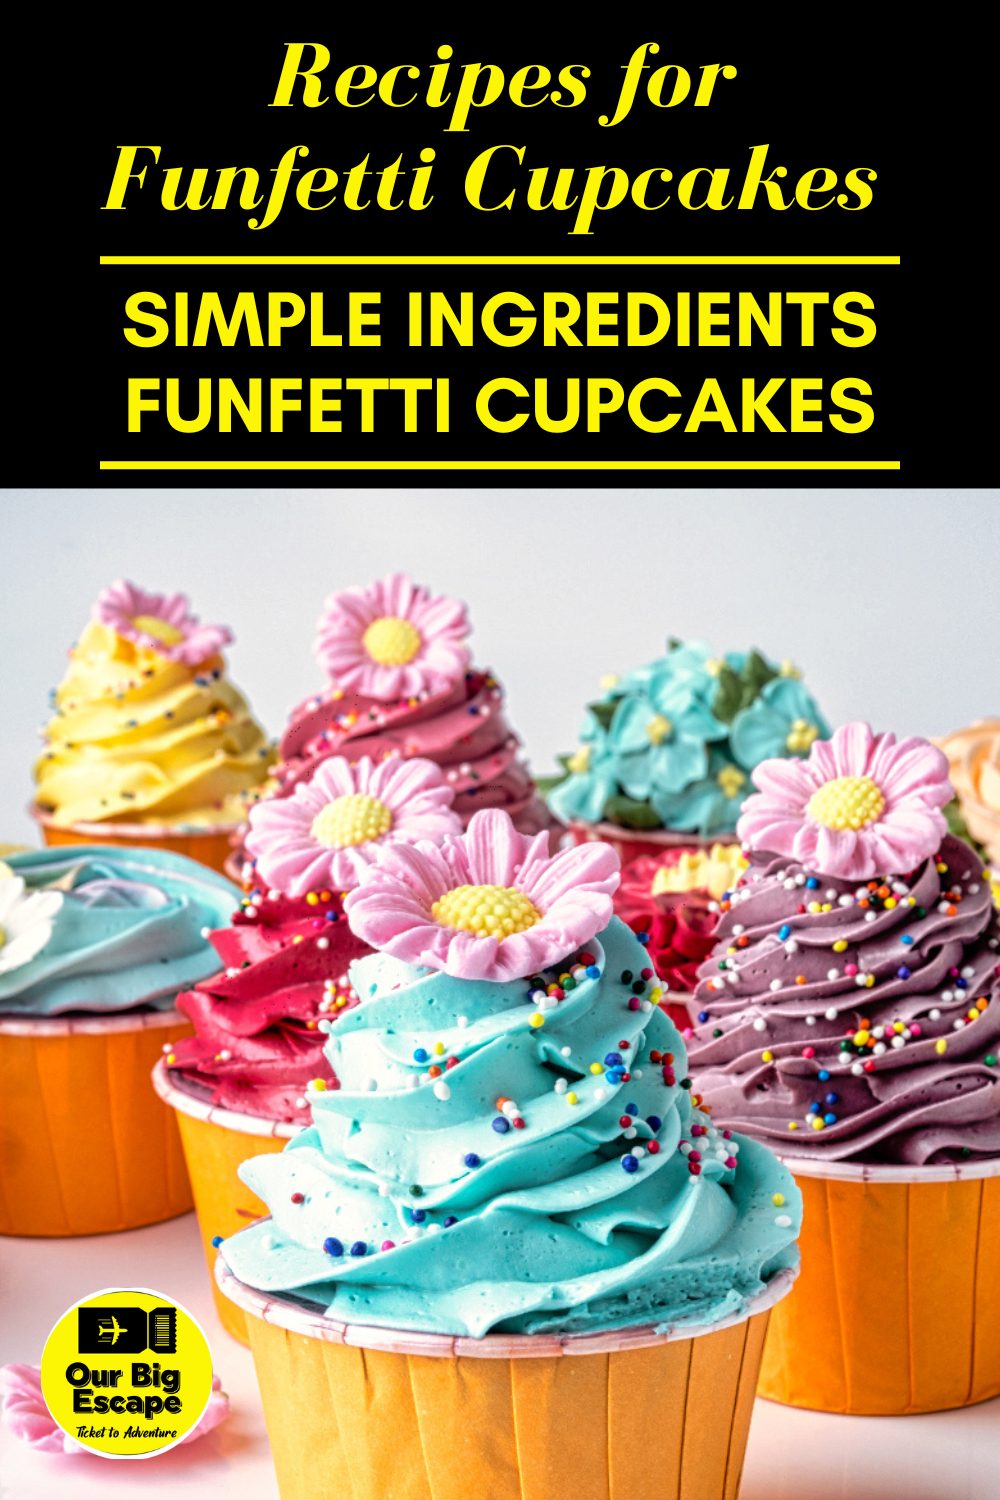 Recipes for Funfetti Cupcakes